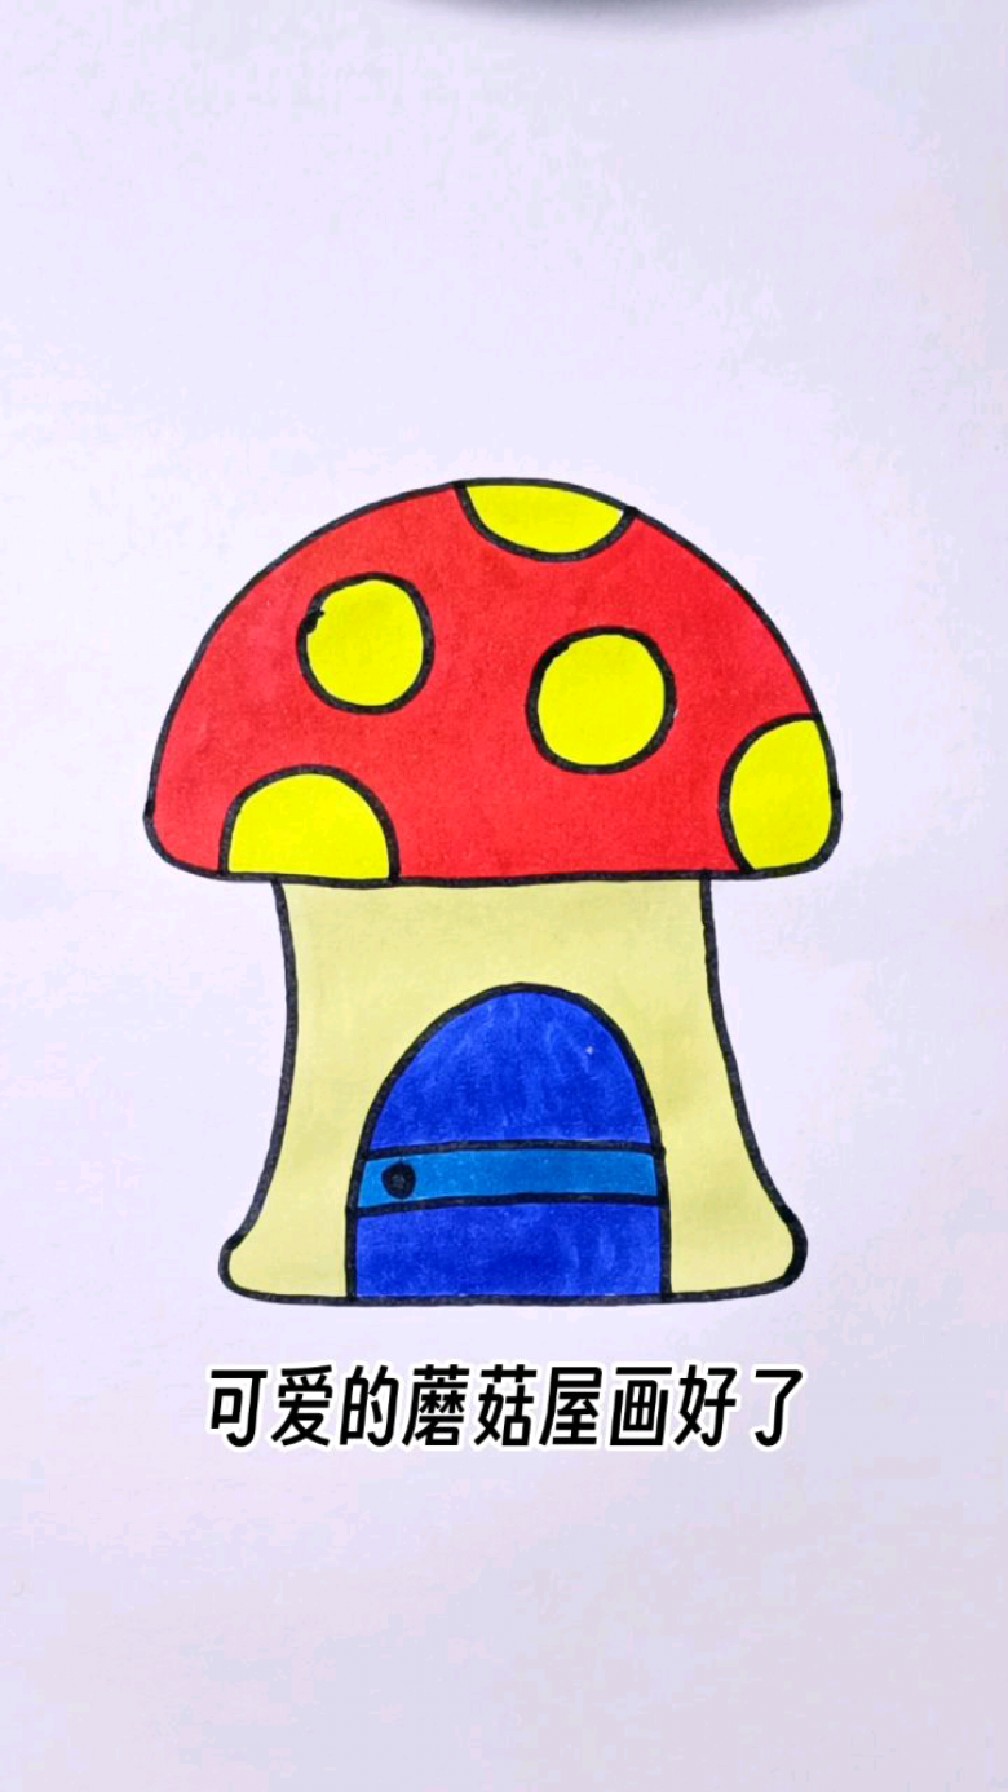 蘑菇房子简笔画怎么画